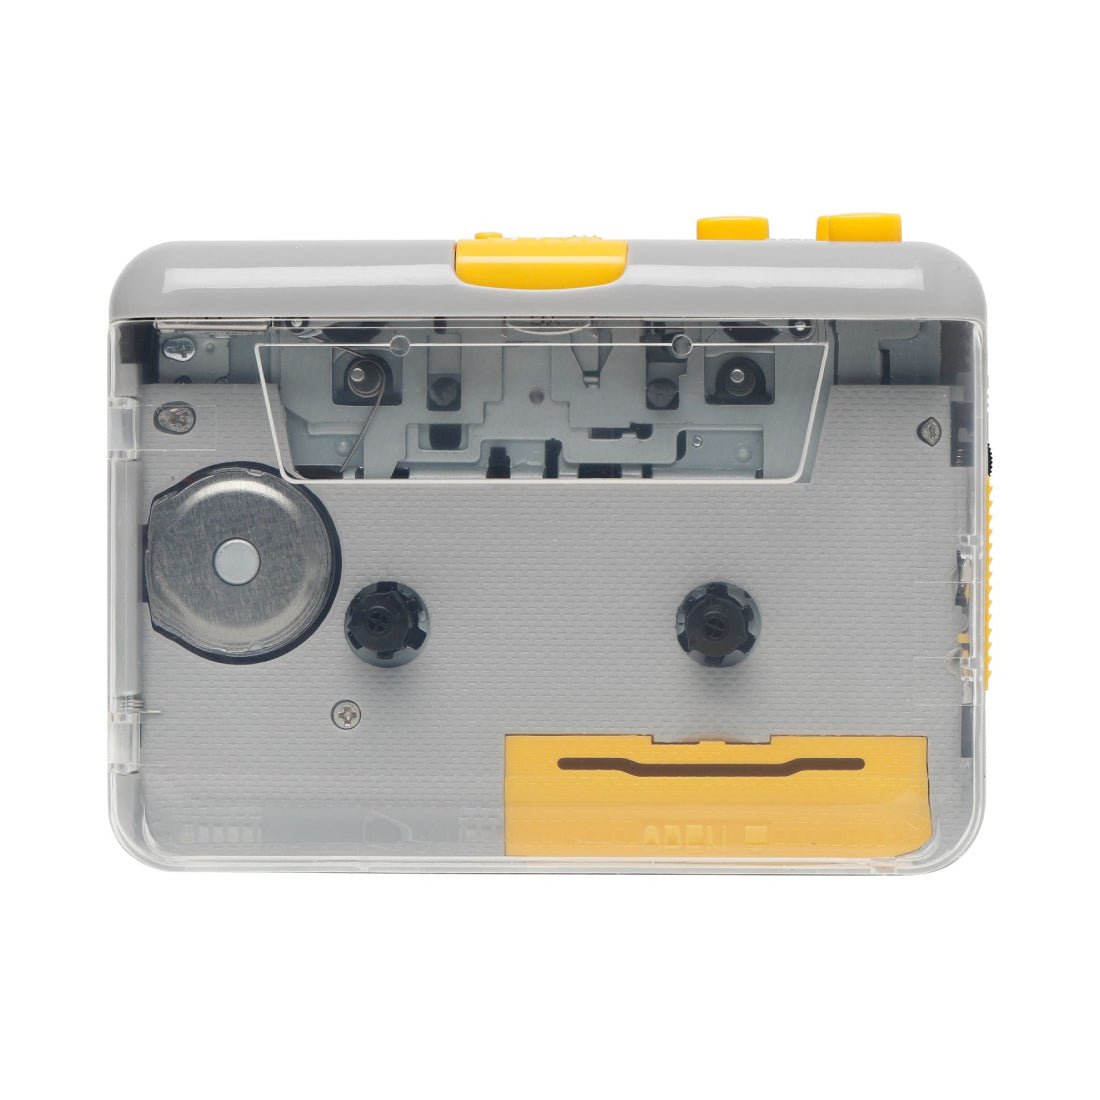 MJI JO9 Clear Super USB Cassette Player - Gray - مشغل كاسيت - Store 974 | ستور ٩٧٤